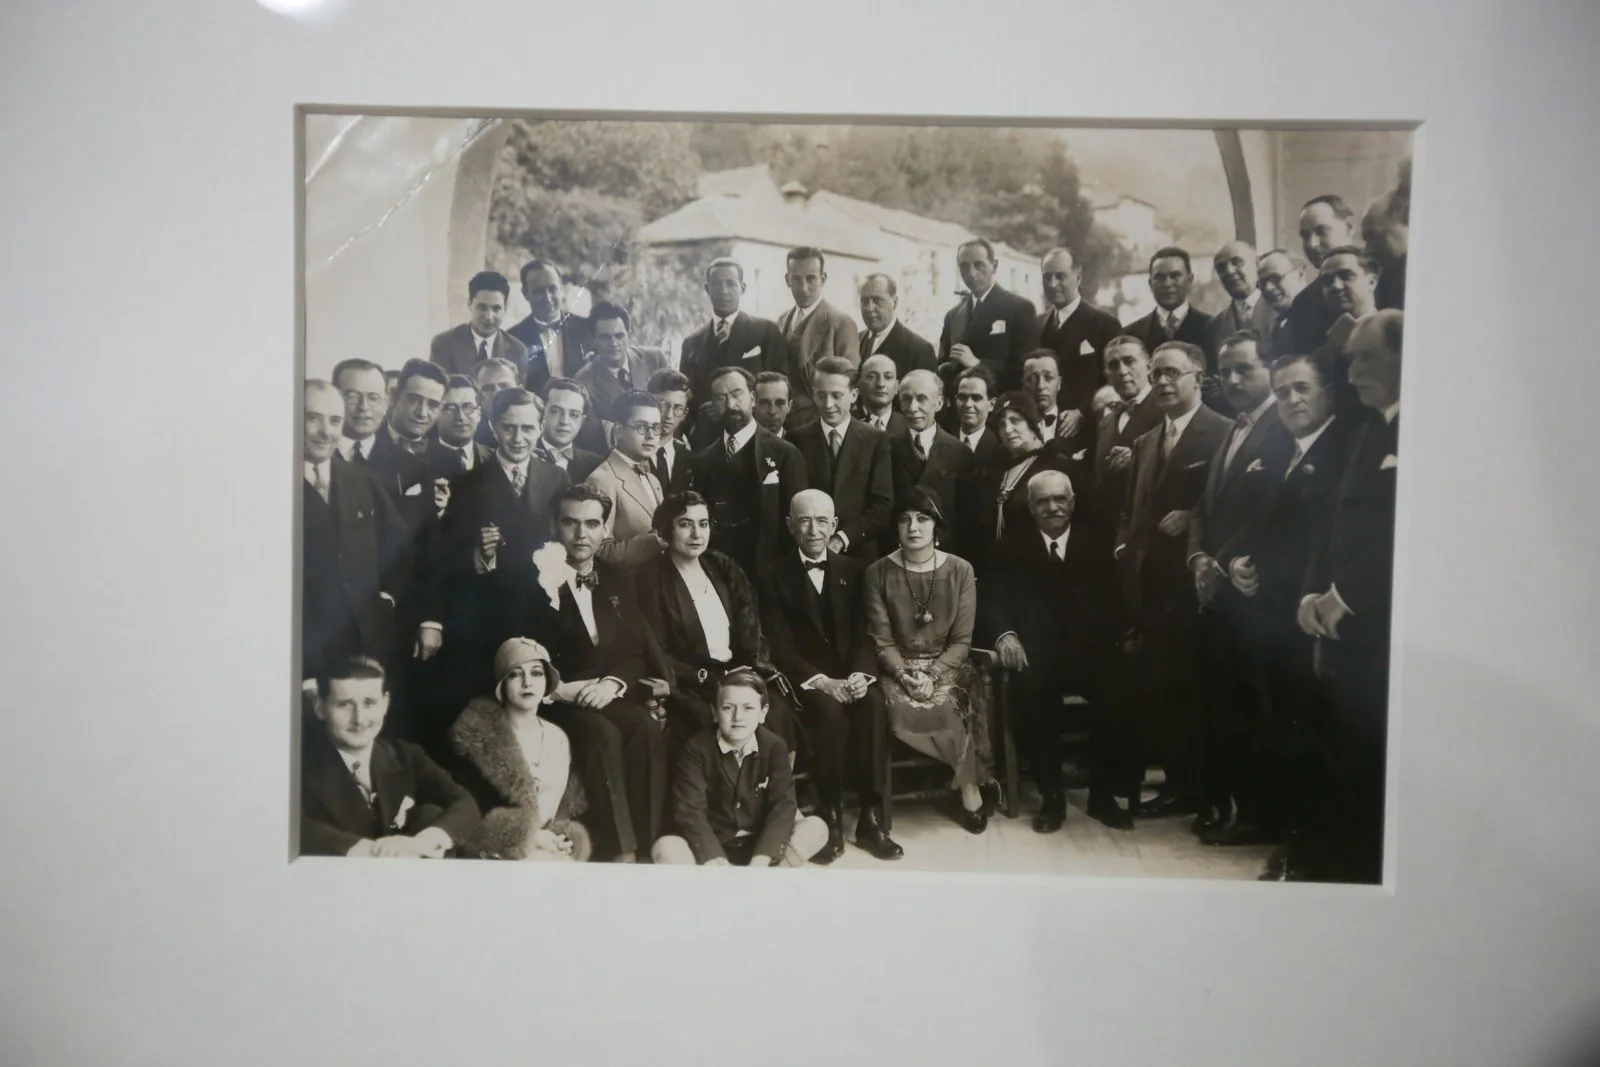 Federico García Lorca y Manuel de Falla con un grupo de personas, hacia 1928. Residencia de Estudiantes.